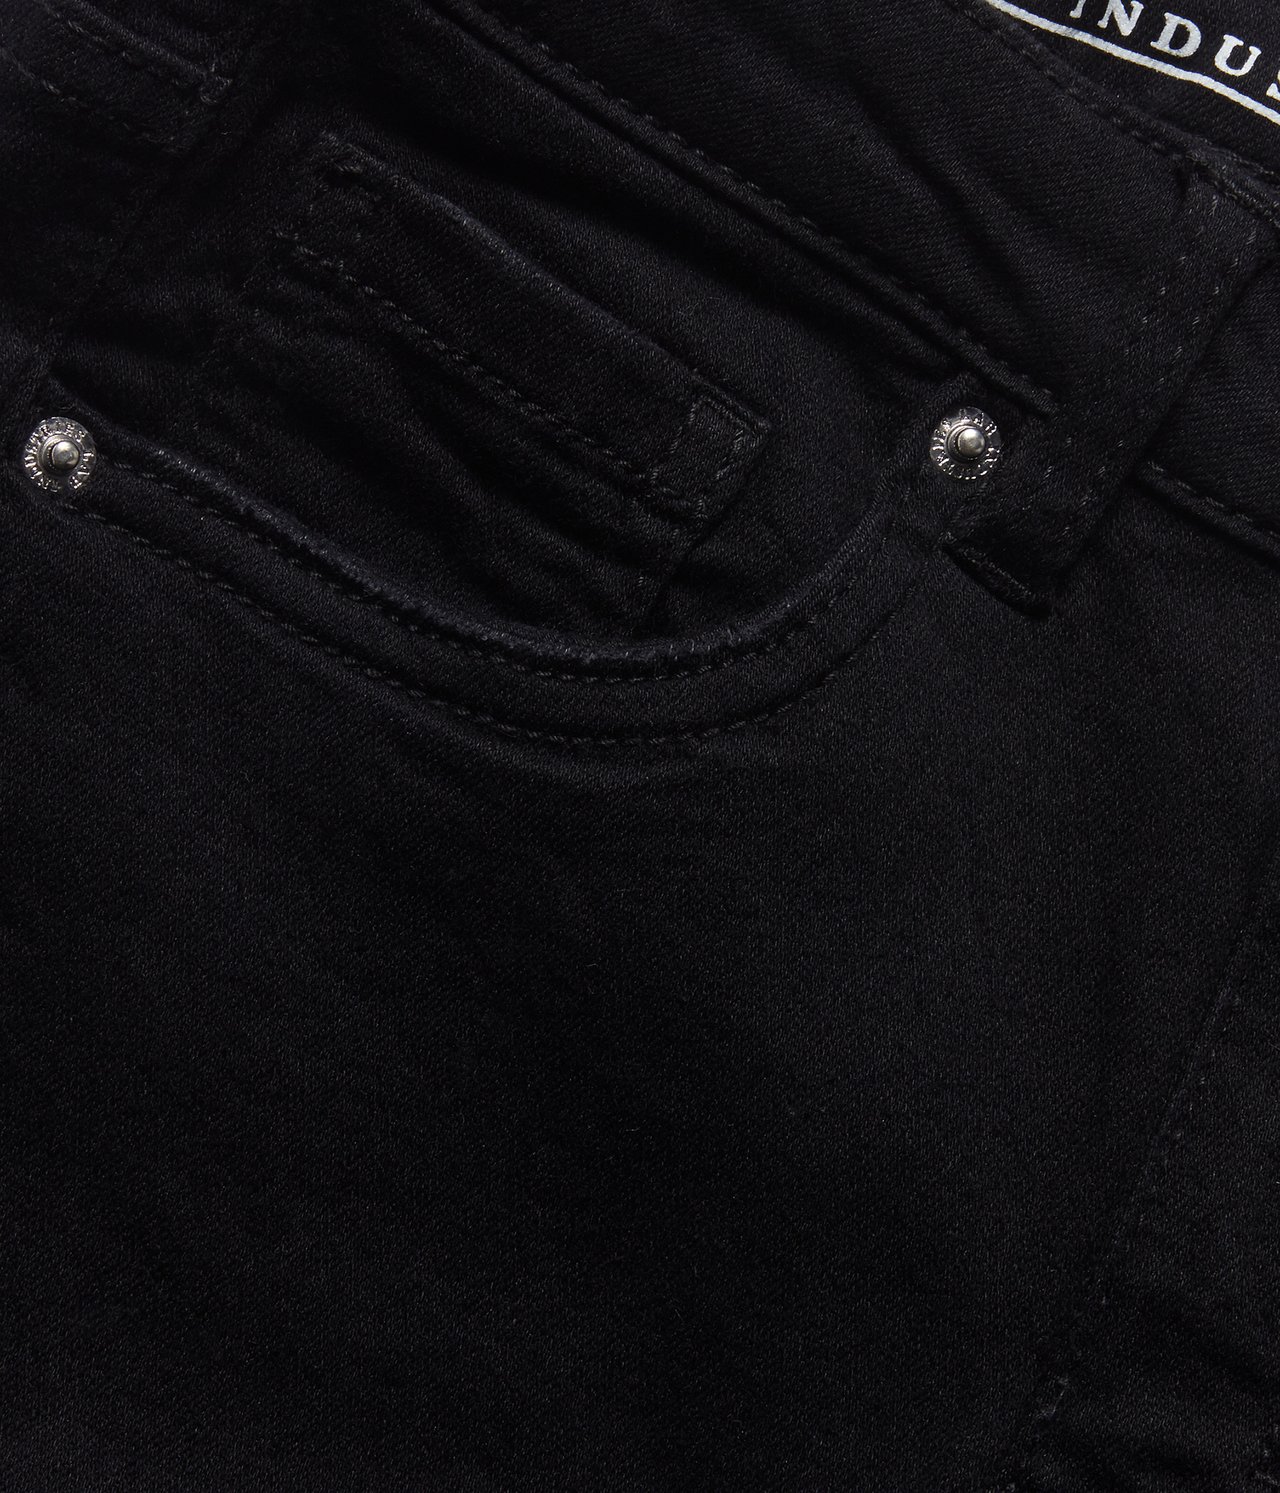 Jeans bootcut high waist stretch - Musta - 5